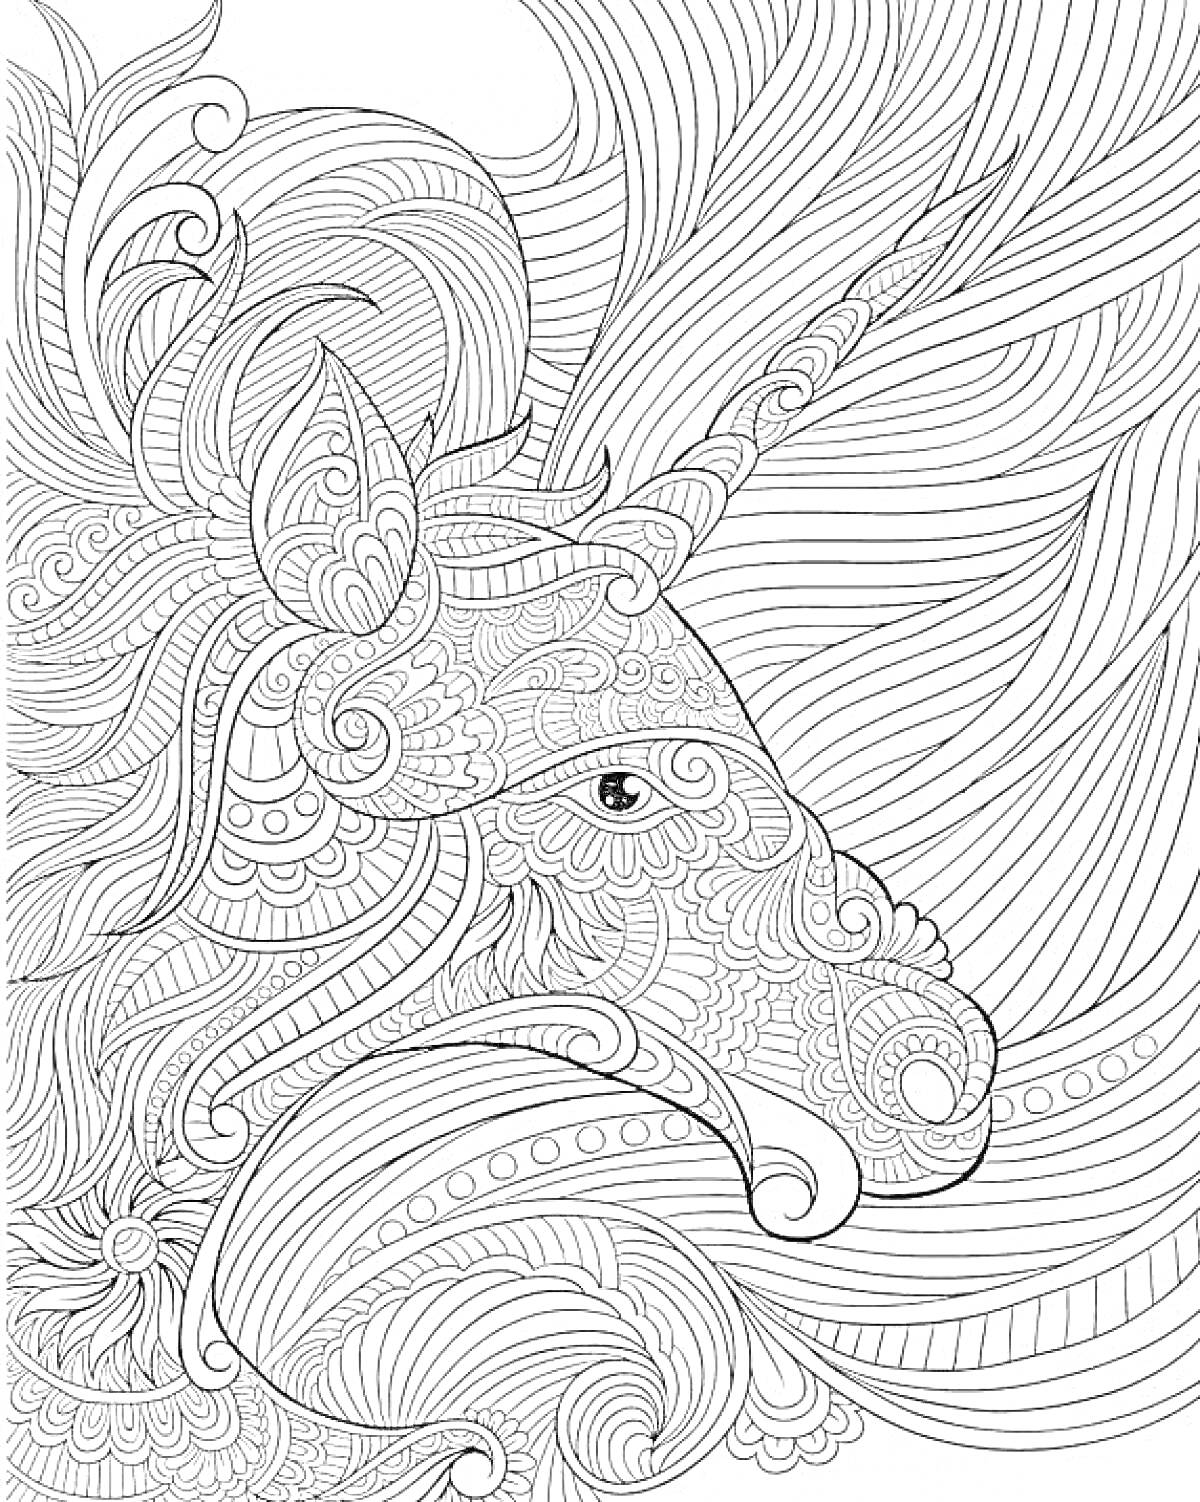 Раскраска Единорог с узорами и развевающейся гривой